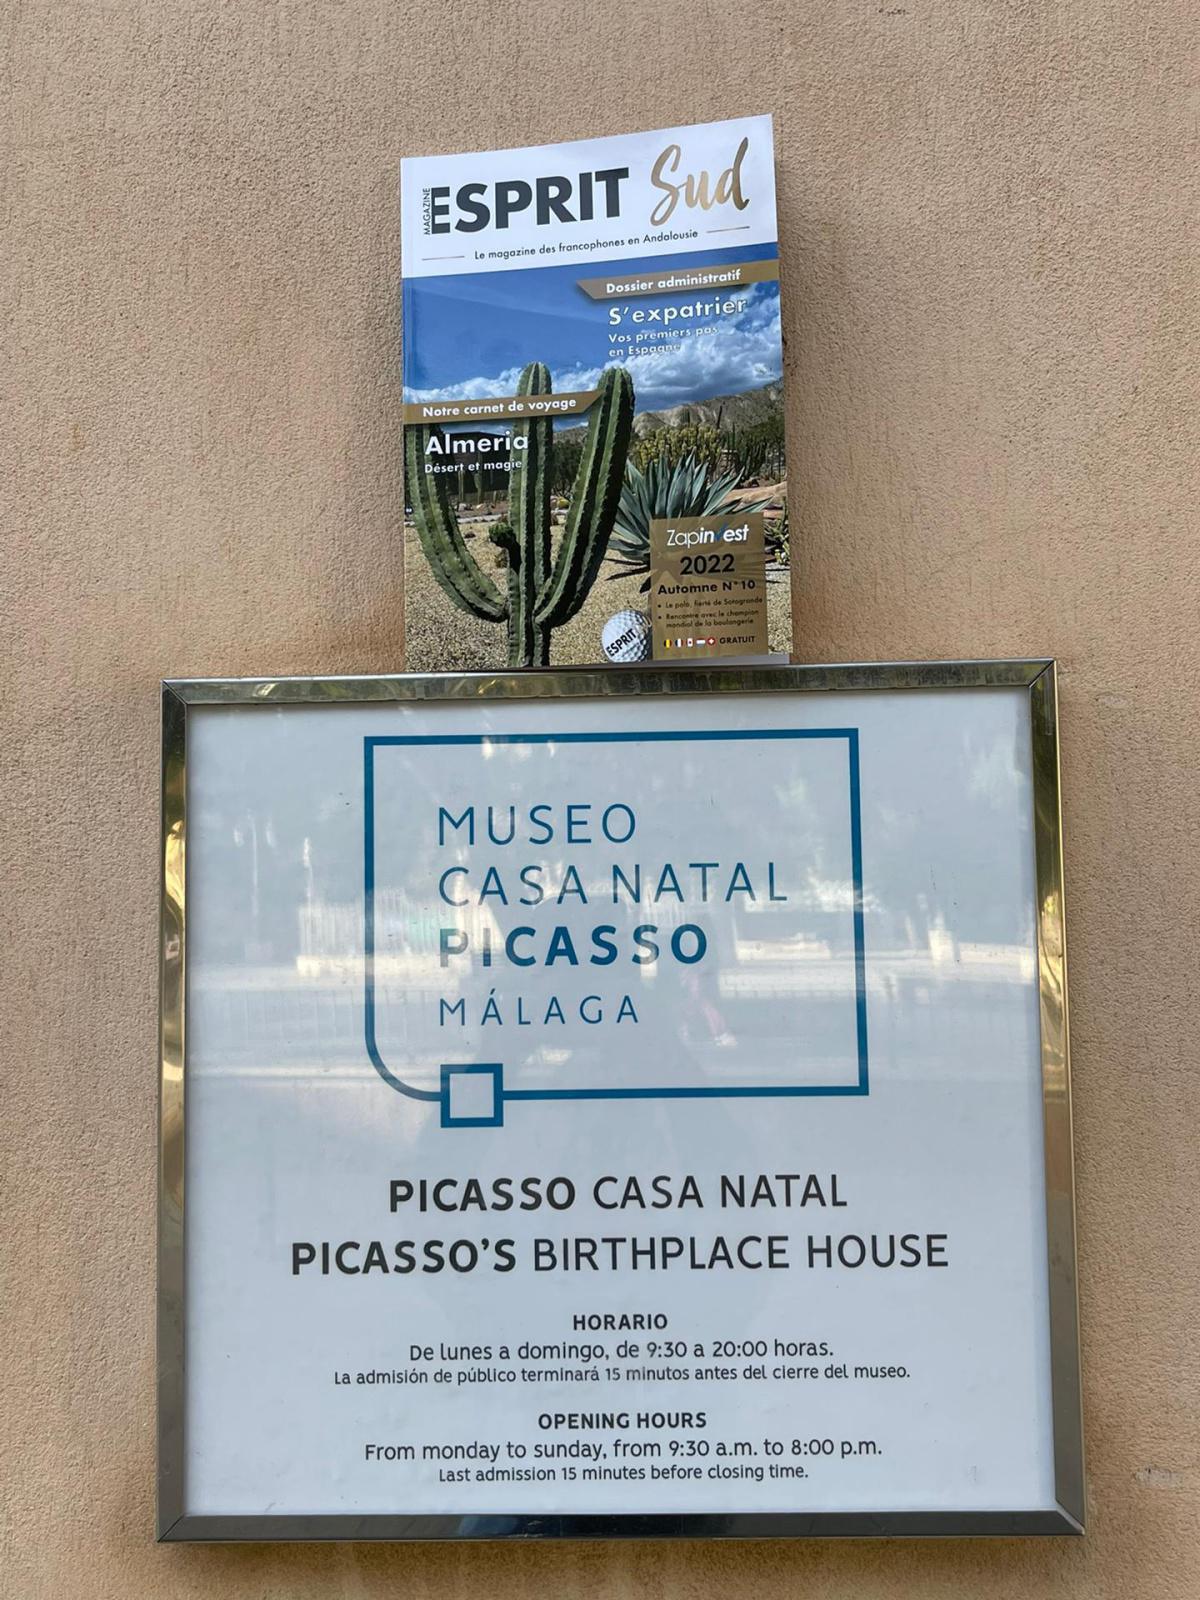 Maison natale de Picasso, suivez le guide! 